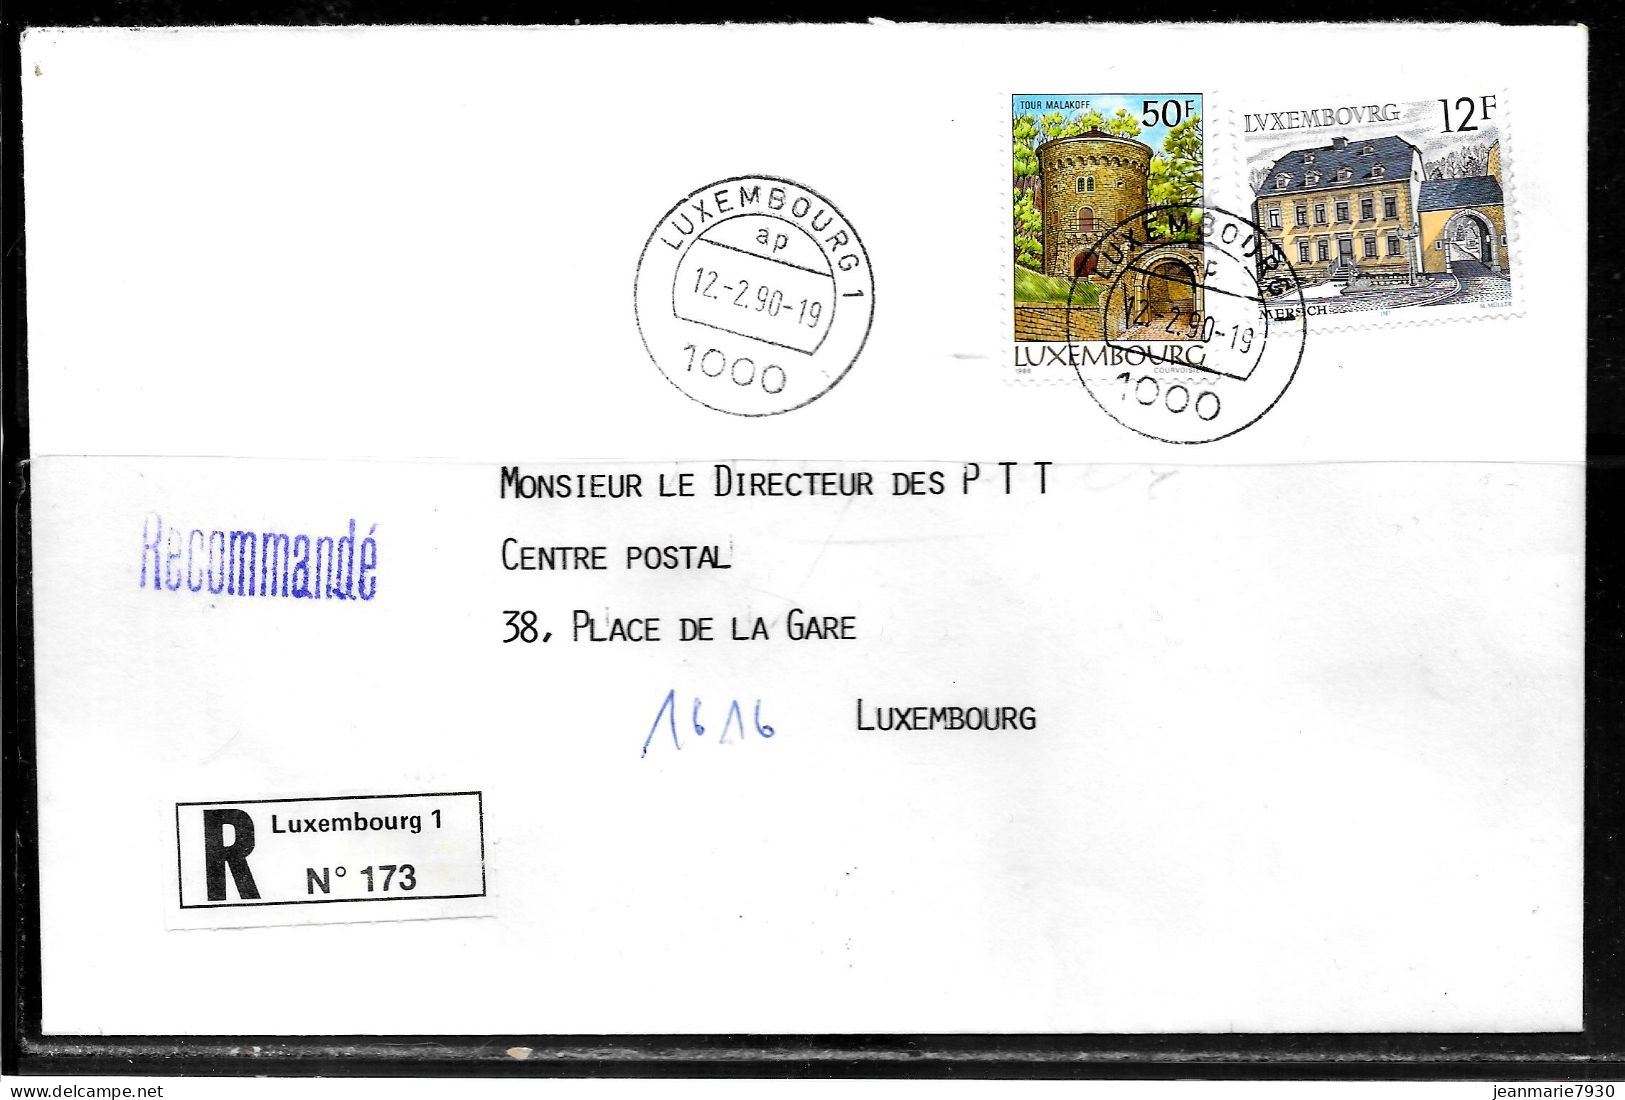 H387 - LETTRE RECOMMANDEE DE LUXEMBOURG DU 12/09/90 - Covers & Documents